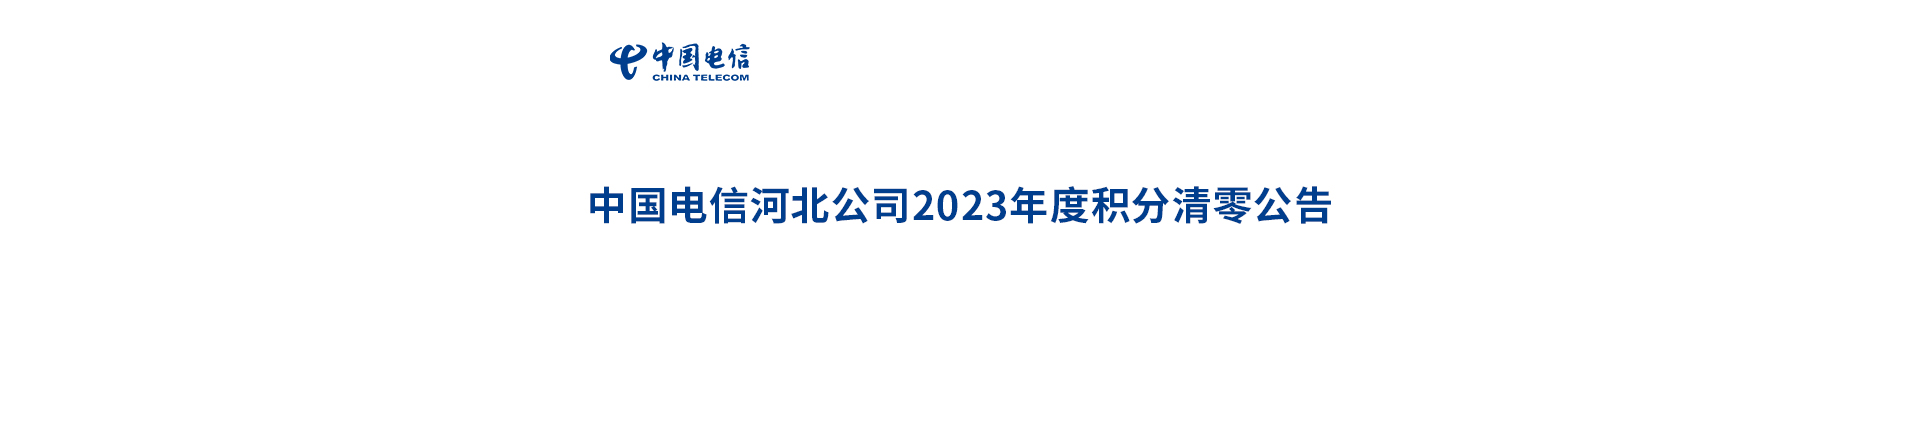 中国电信2023年度积分清零公告